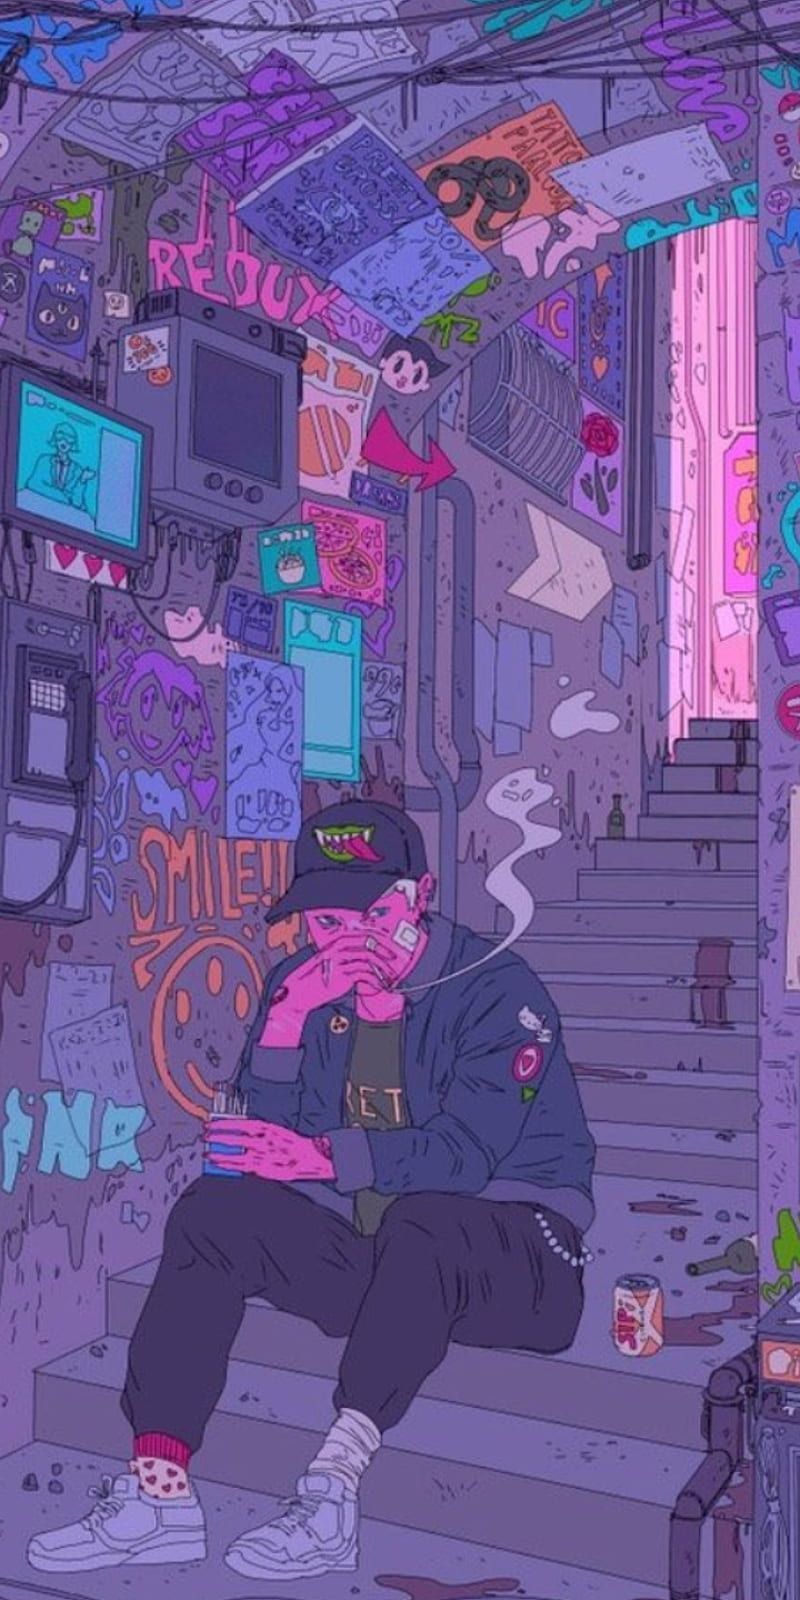 Aesthetic boy smoking a cigarette wallpaper - Illustration, VSCO